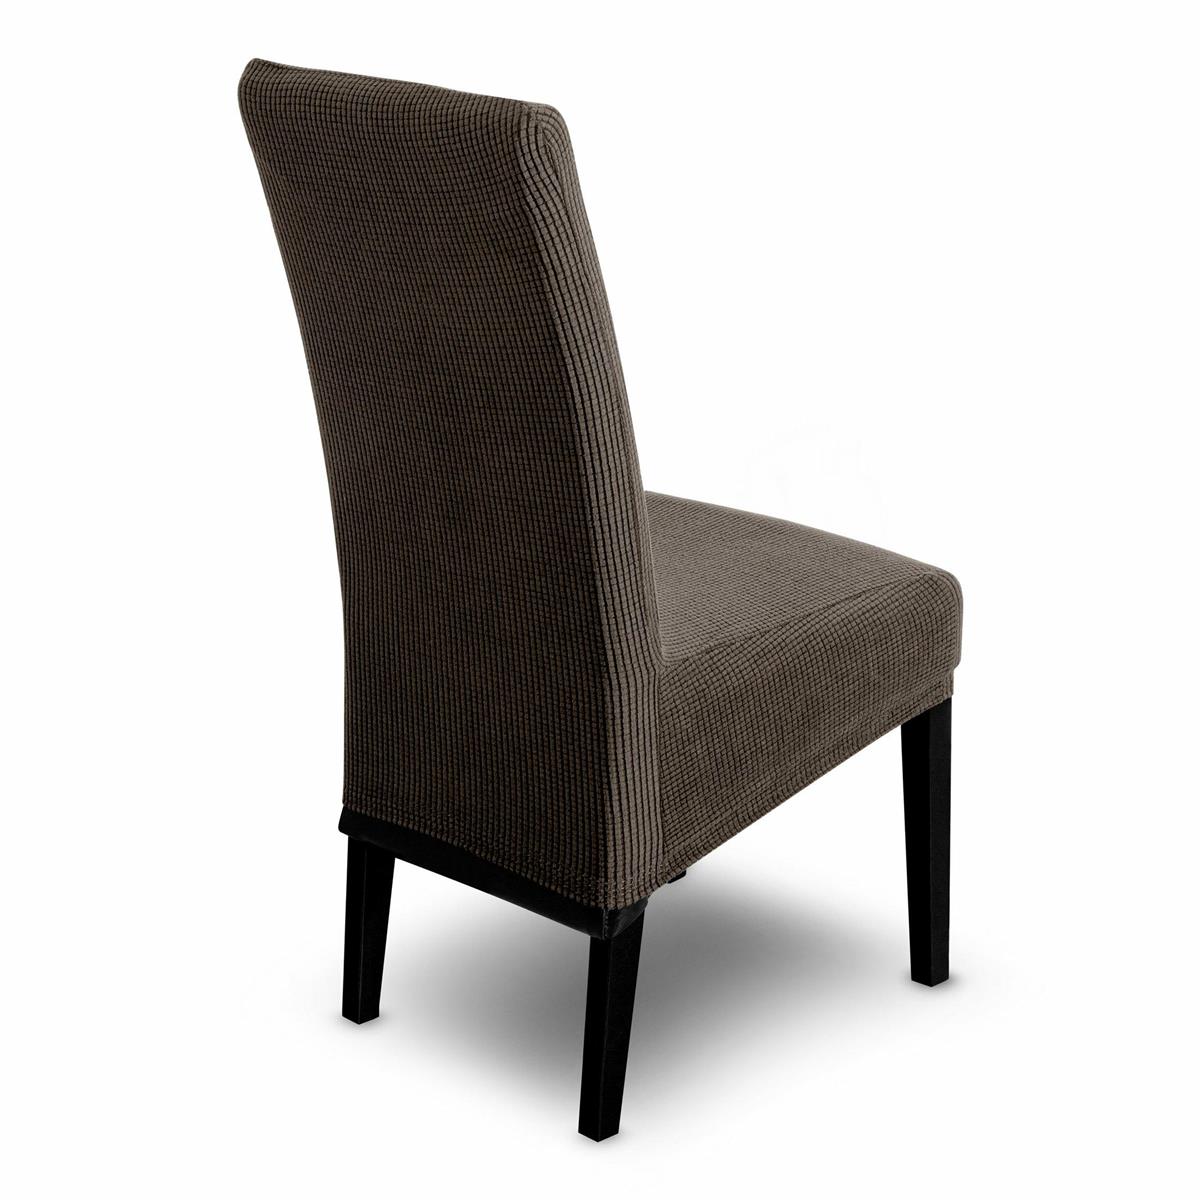 Pokrowiec 1 na krzesło 35x55x30 cm brązowy